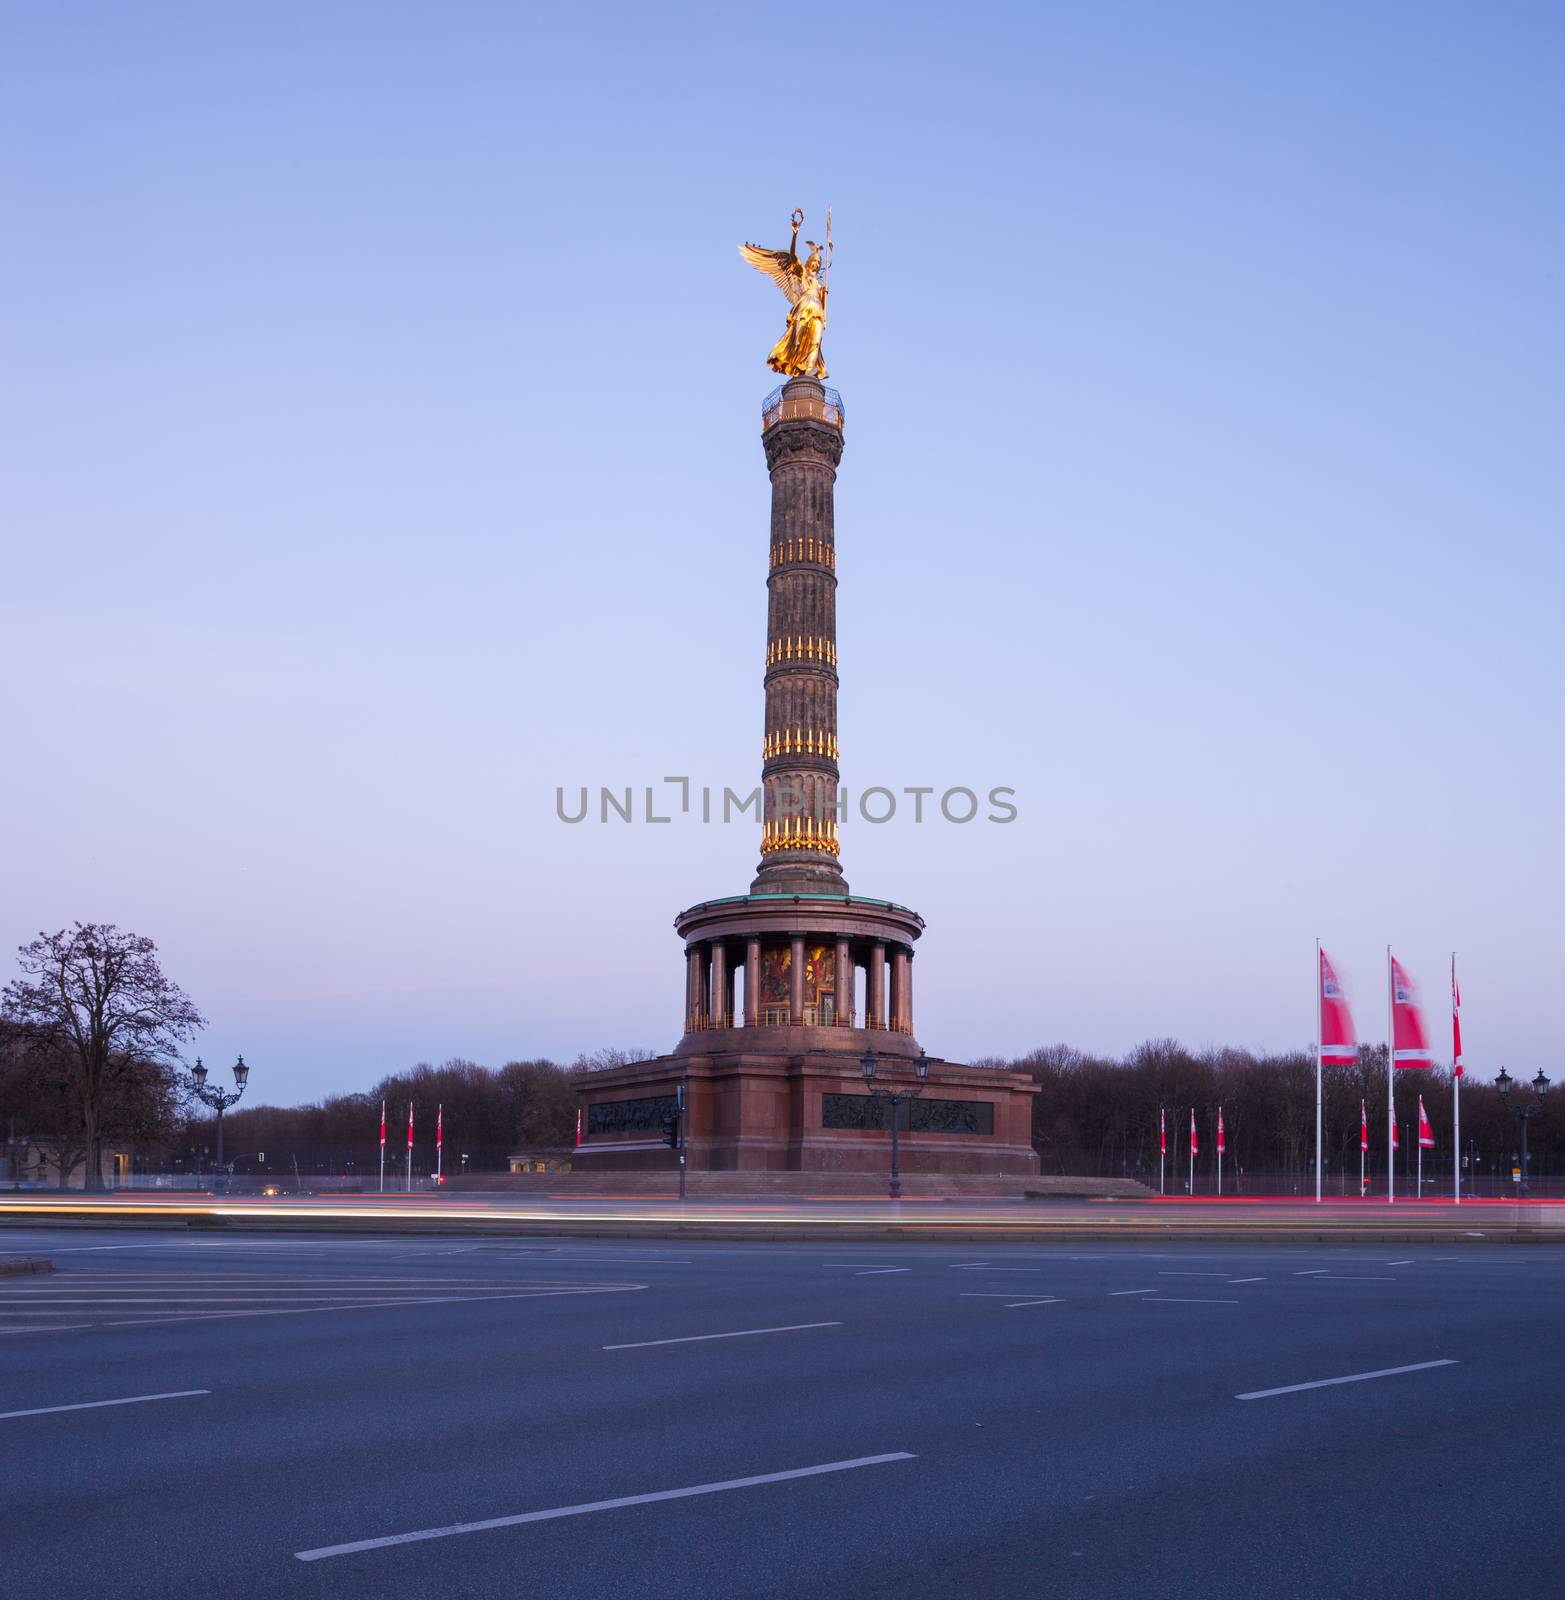 The Berlin Siegessaeule (Victory Column) in Tiergarten park, seen at twilight